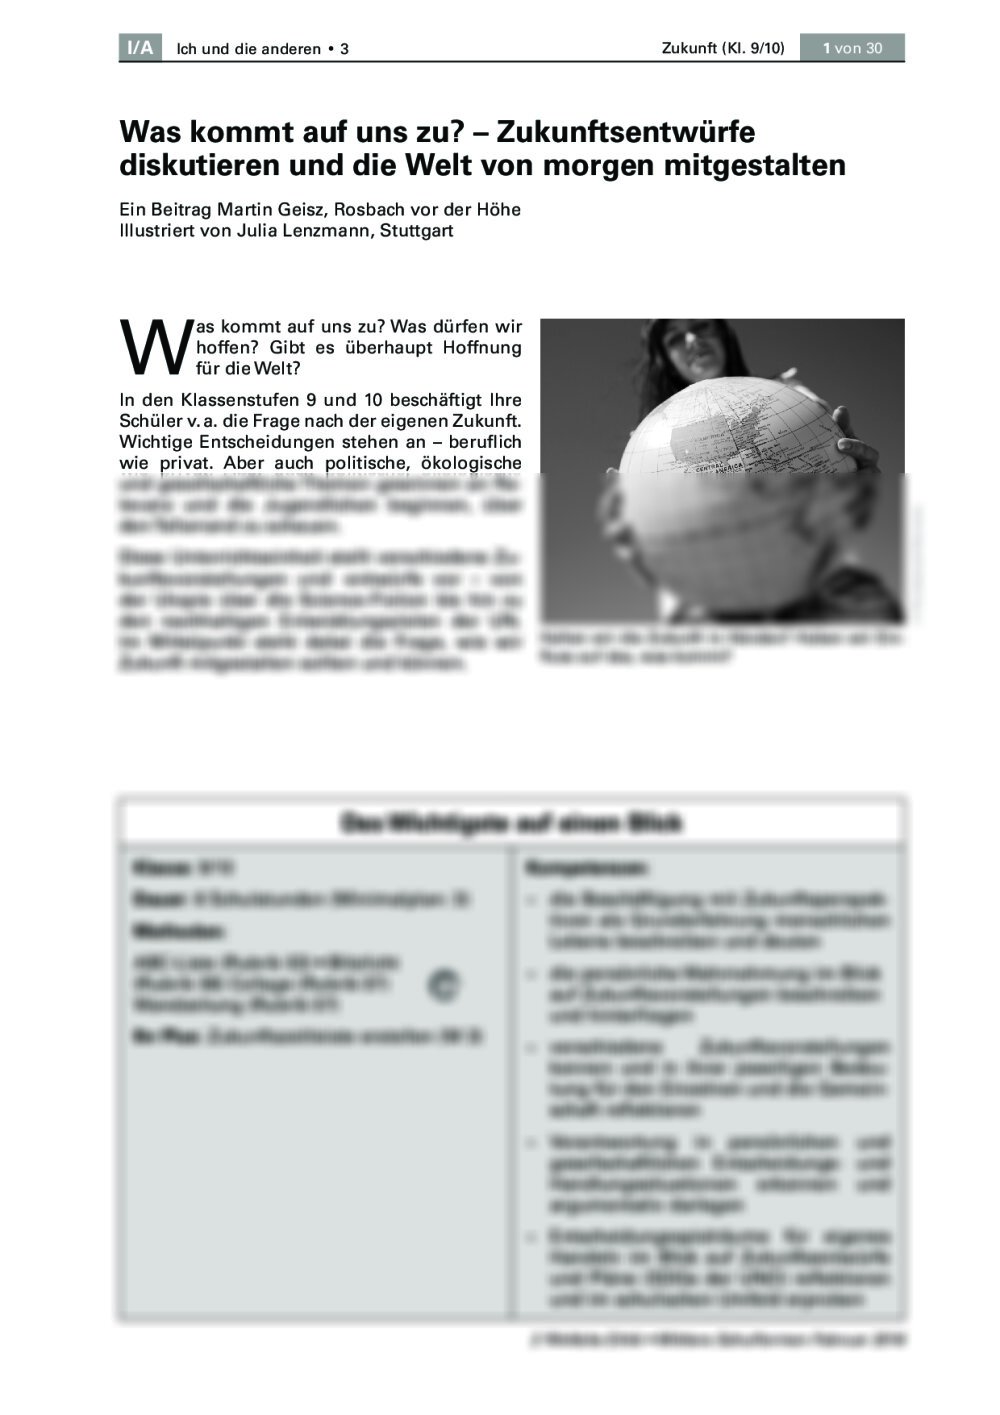 Zukunftsentwürfe diskutieren und die Welt von morgen mitgestalten - Seite 1